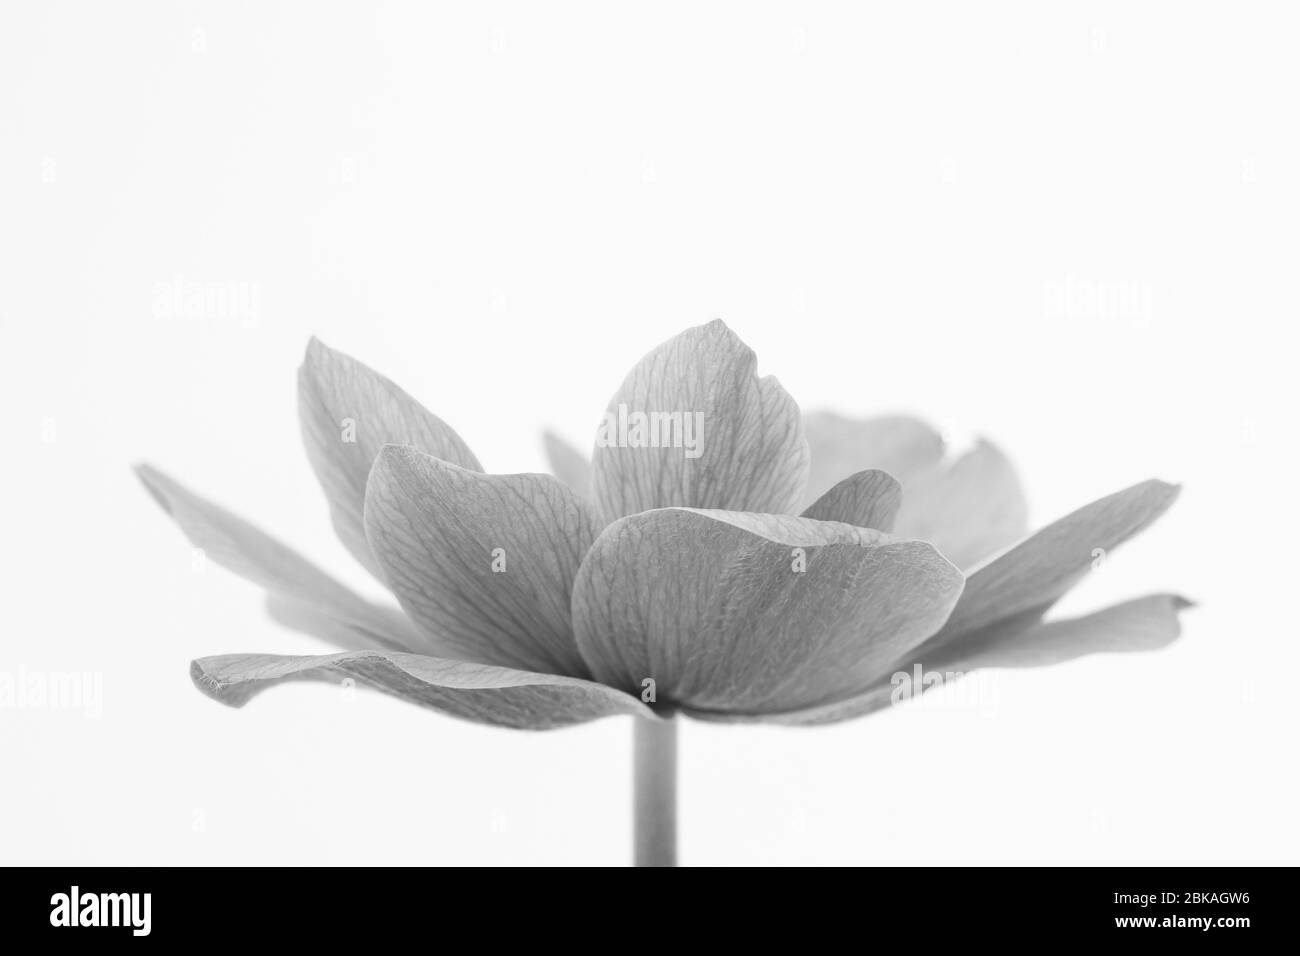 Immagine in bianco e nero dei delicati petali di un fiore di Anemone su sfondo bianco Foto Stock